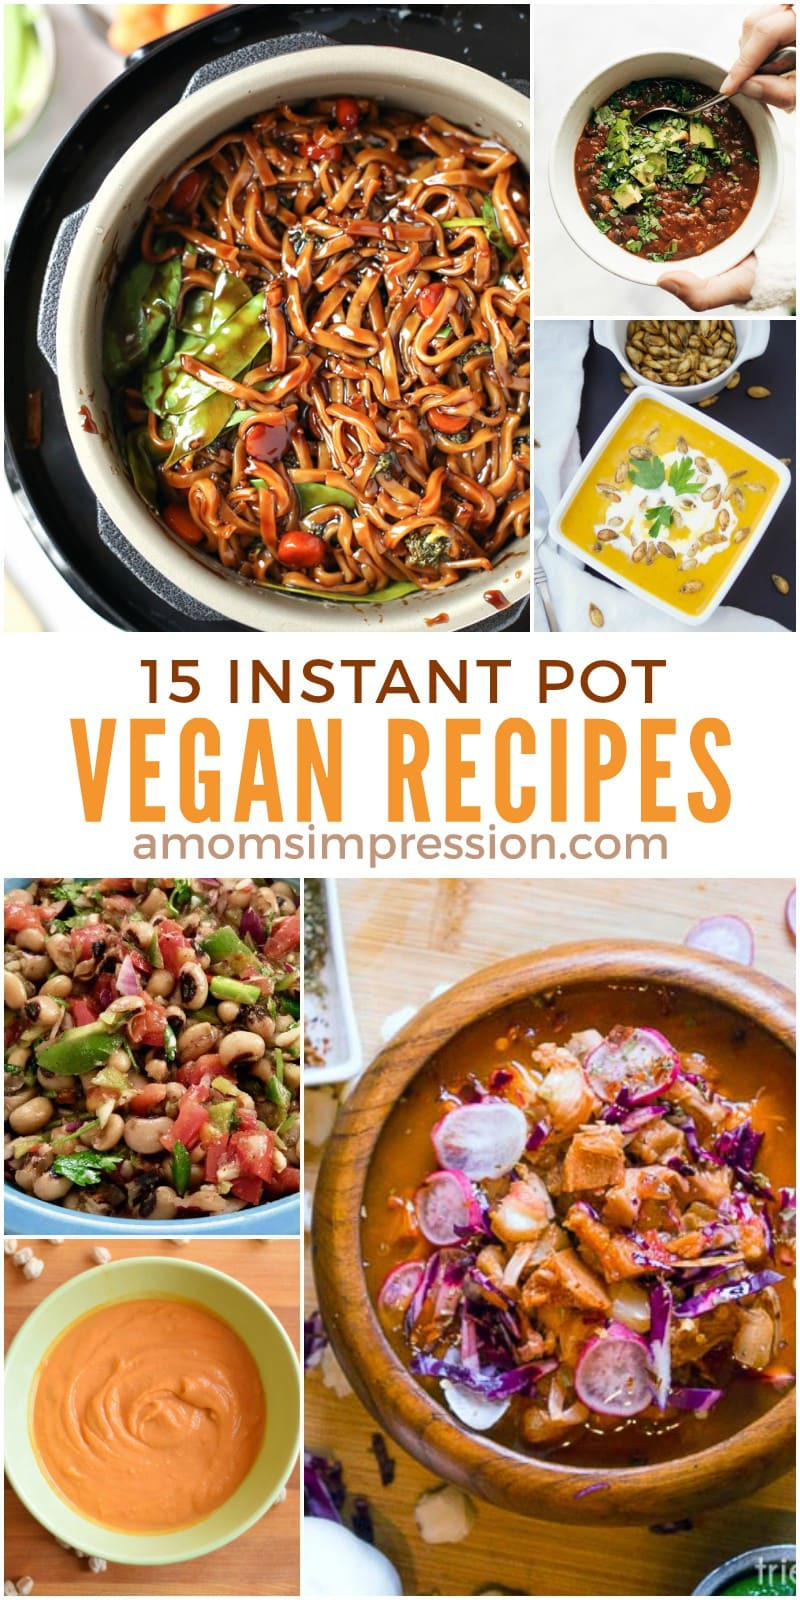 Vegan Instant Pot Recipes
 15 Healthy and Delicious Vegan Instant Pot Recipes